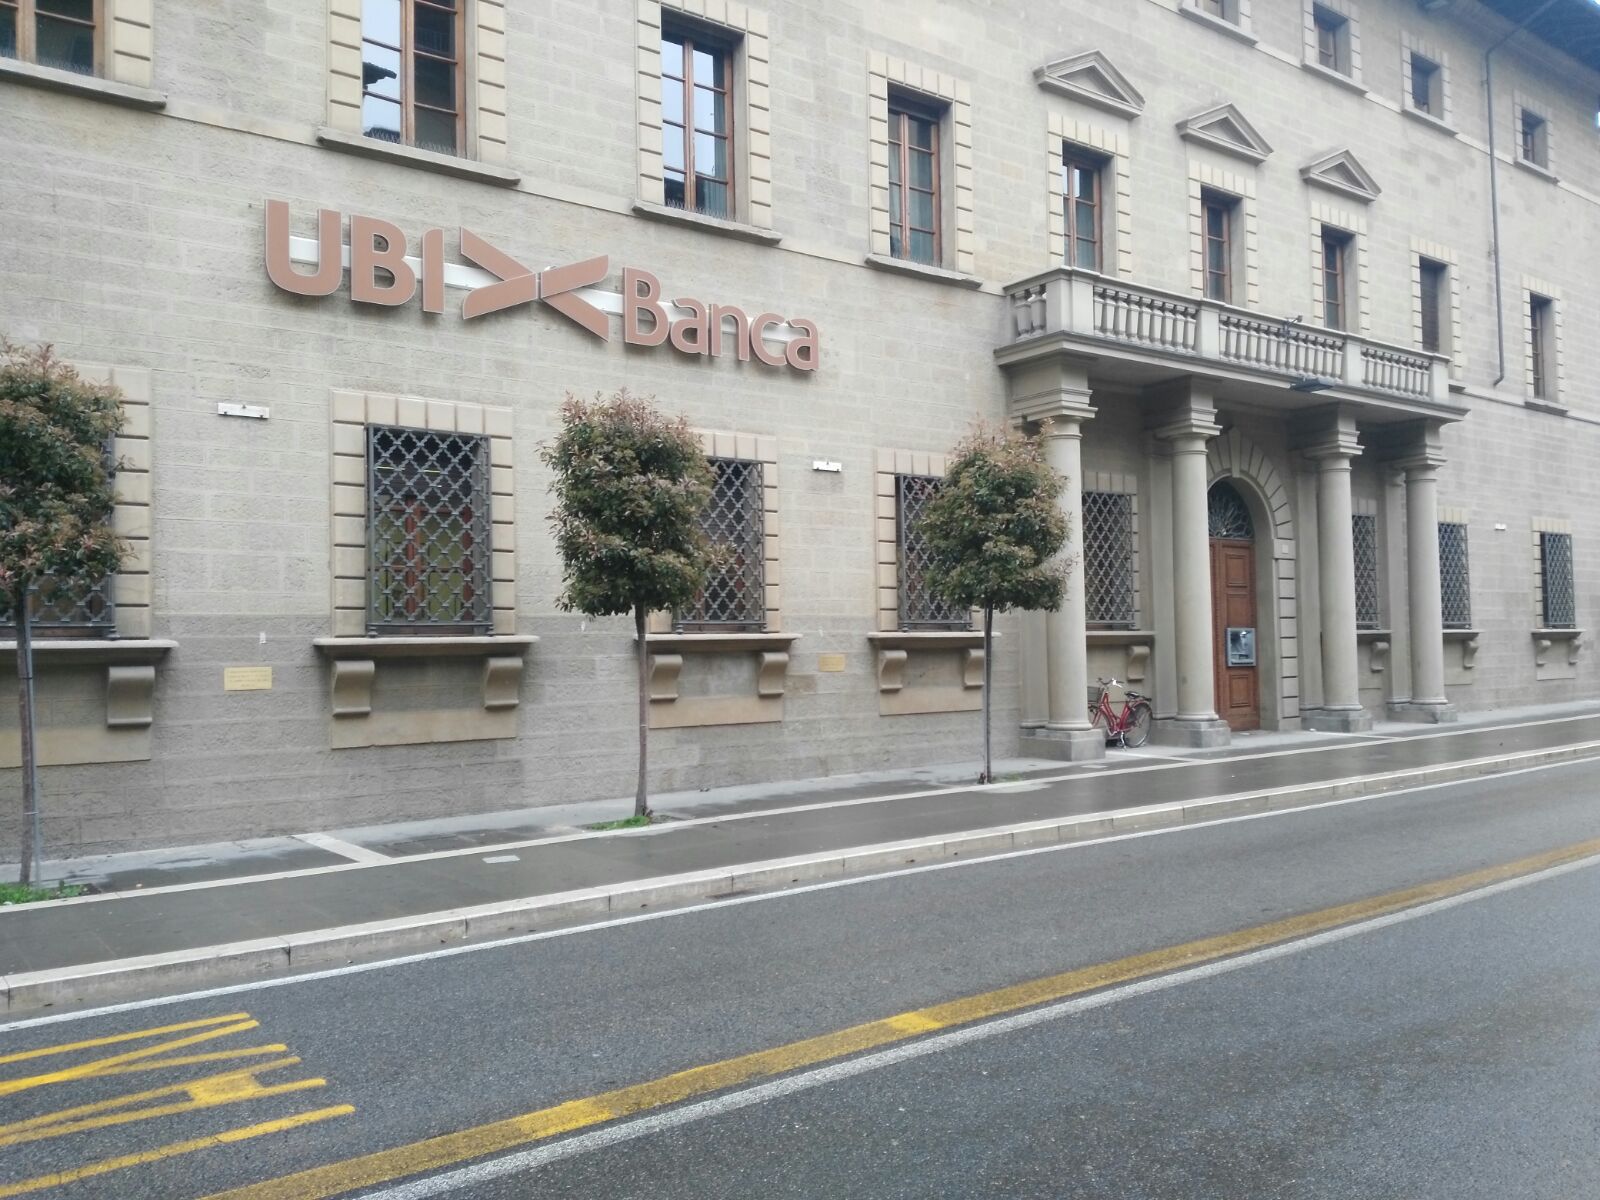 Ubi Banca Intesa Sanpaolo A Confronto Online Con Le Istituzioni Di Arezzo Economia Arezzo24